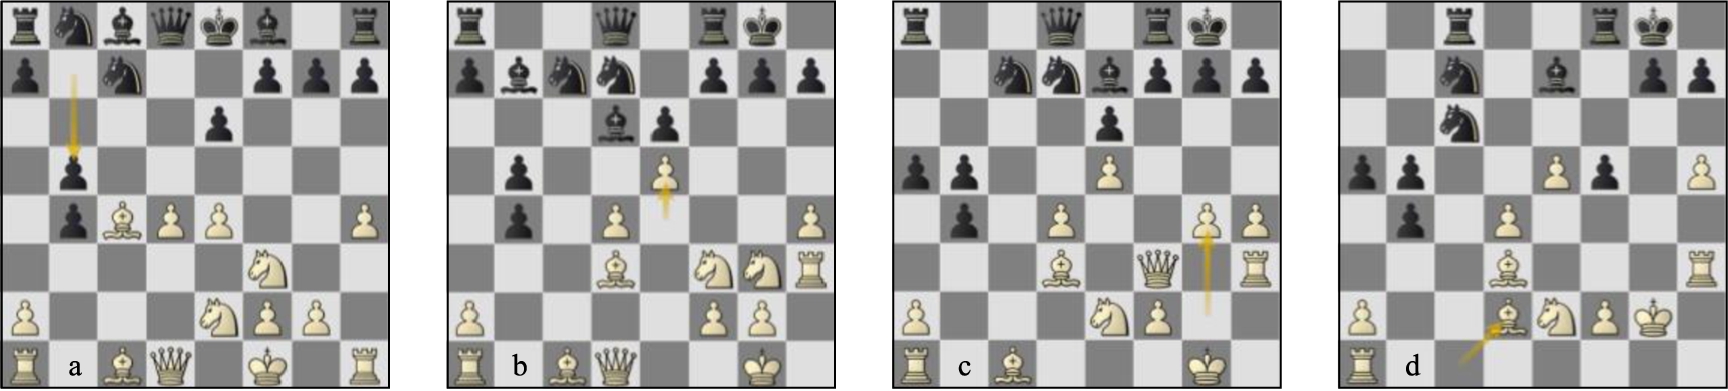 Game 77 Lc-St (a) p13w, (b) p17b, (c) p20b, (d) p27b.